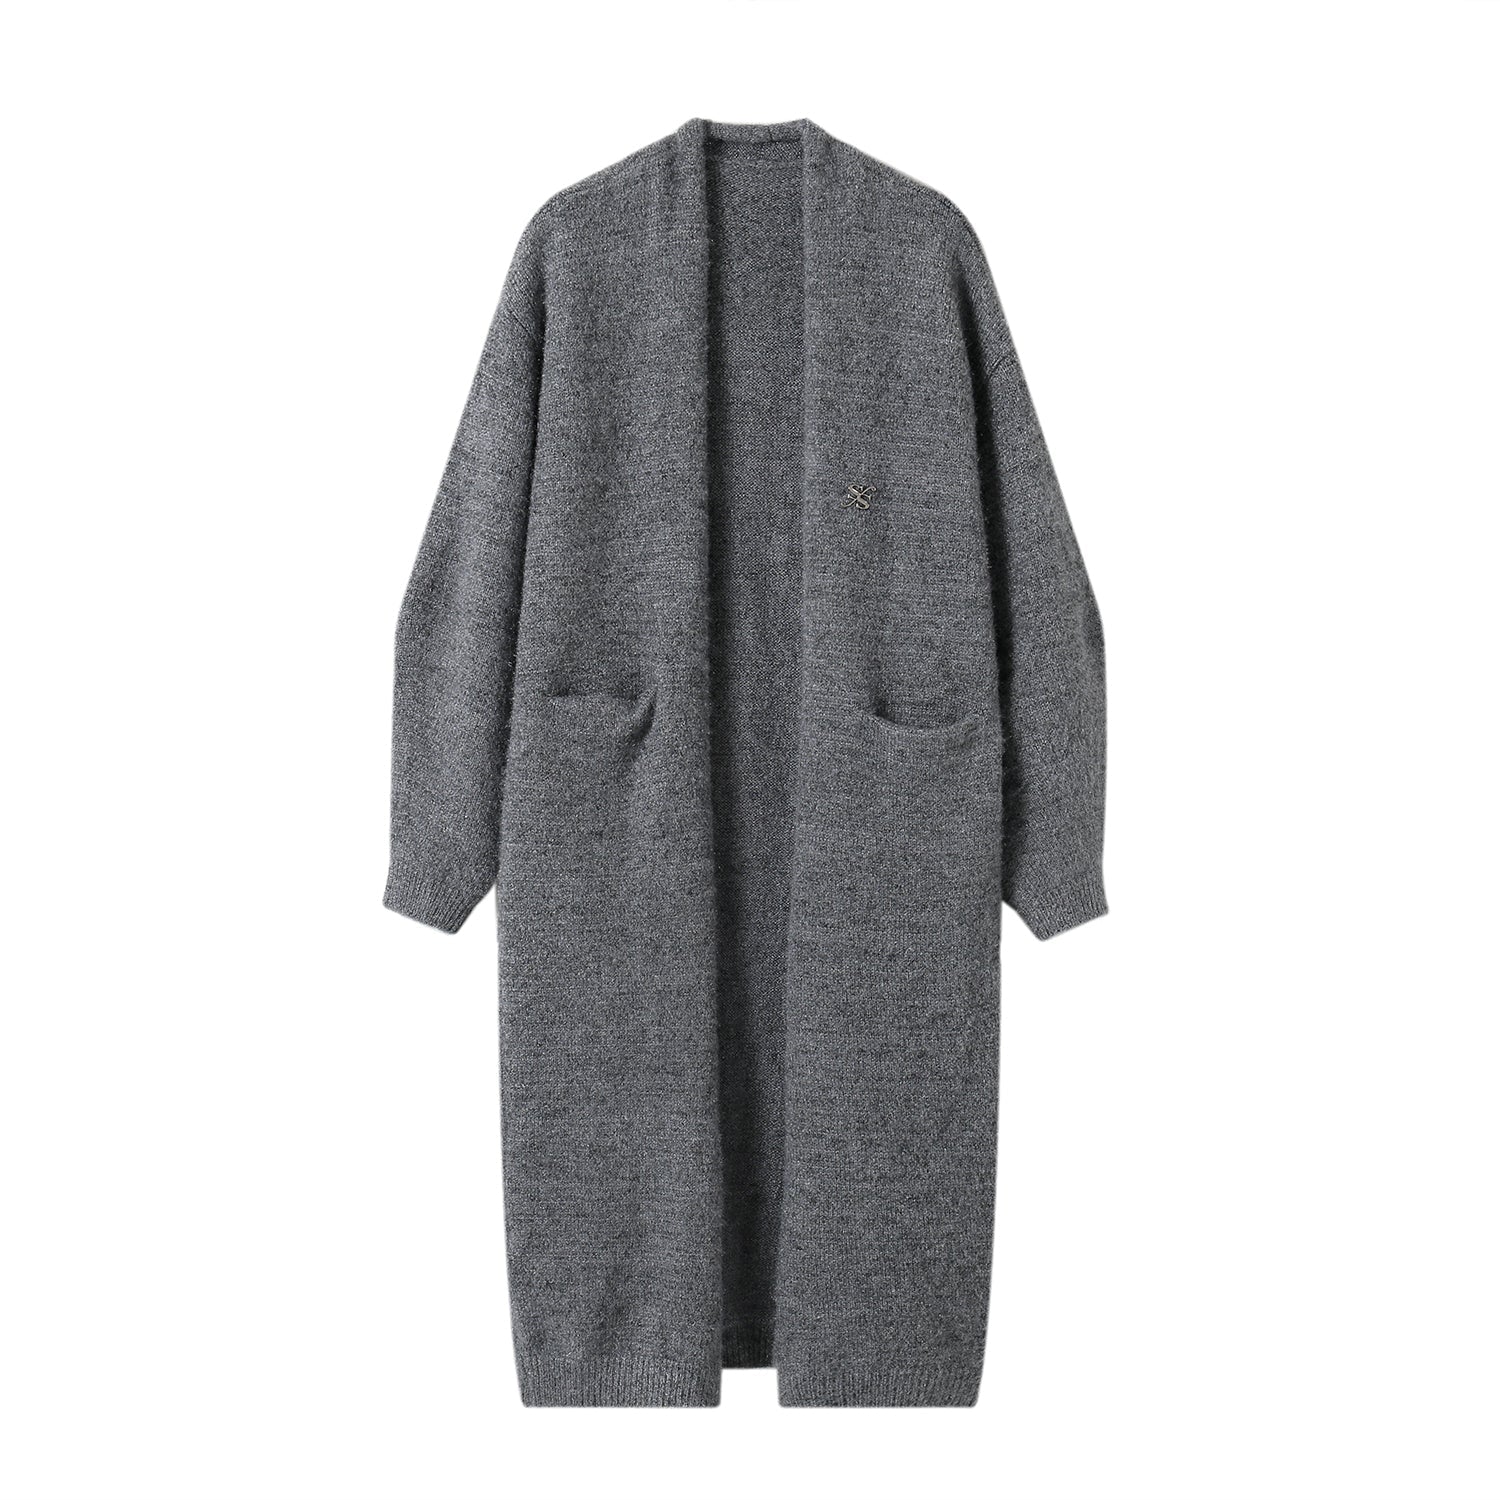 SOMESOWE Grey Fluffy Blend Long Cardigan | MADA IN CHINA